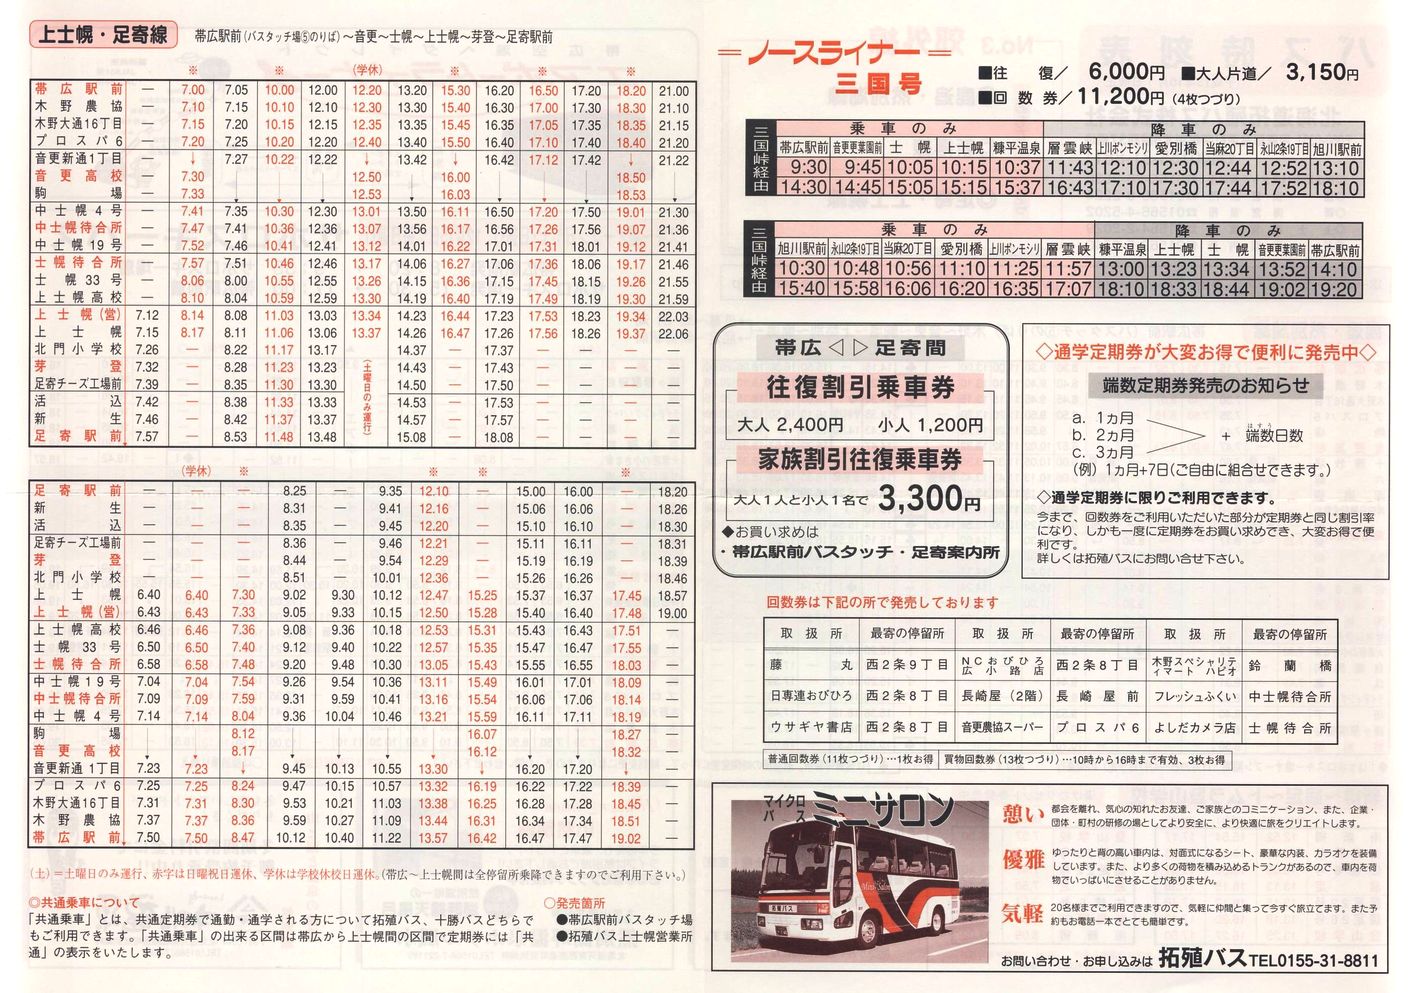 2001-10-01改正_北海道拓殖バス_時刻表３裏面